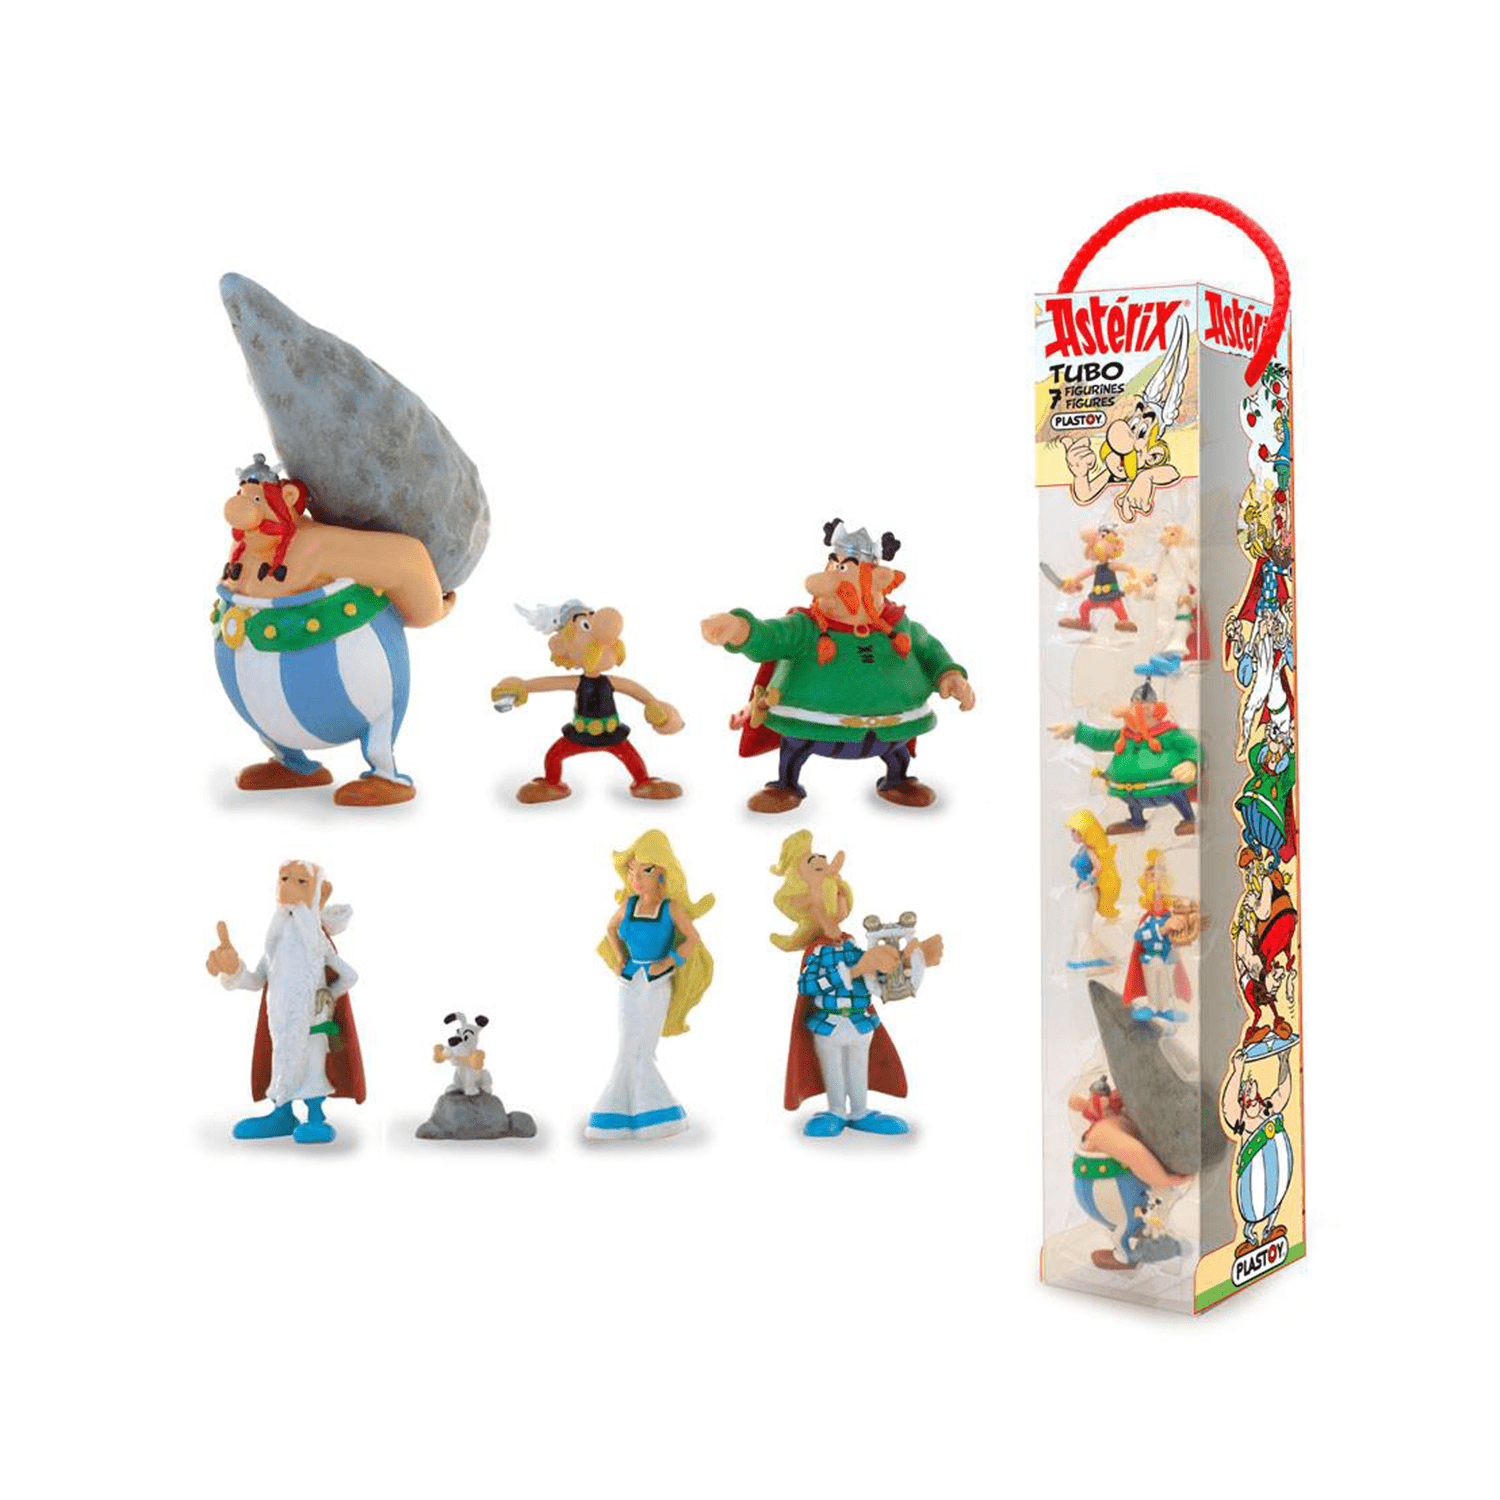 asterix-7-mini-figures-set